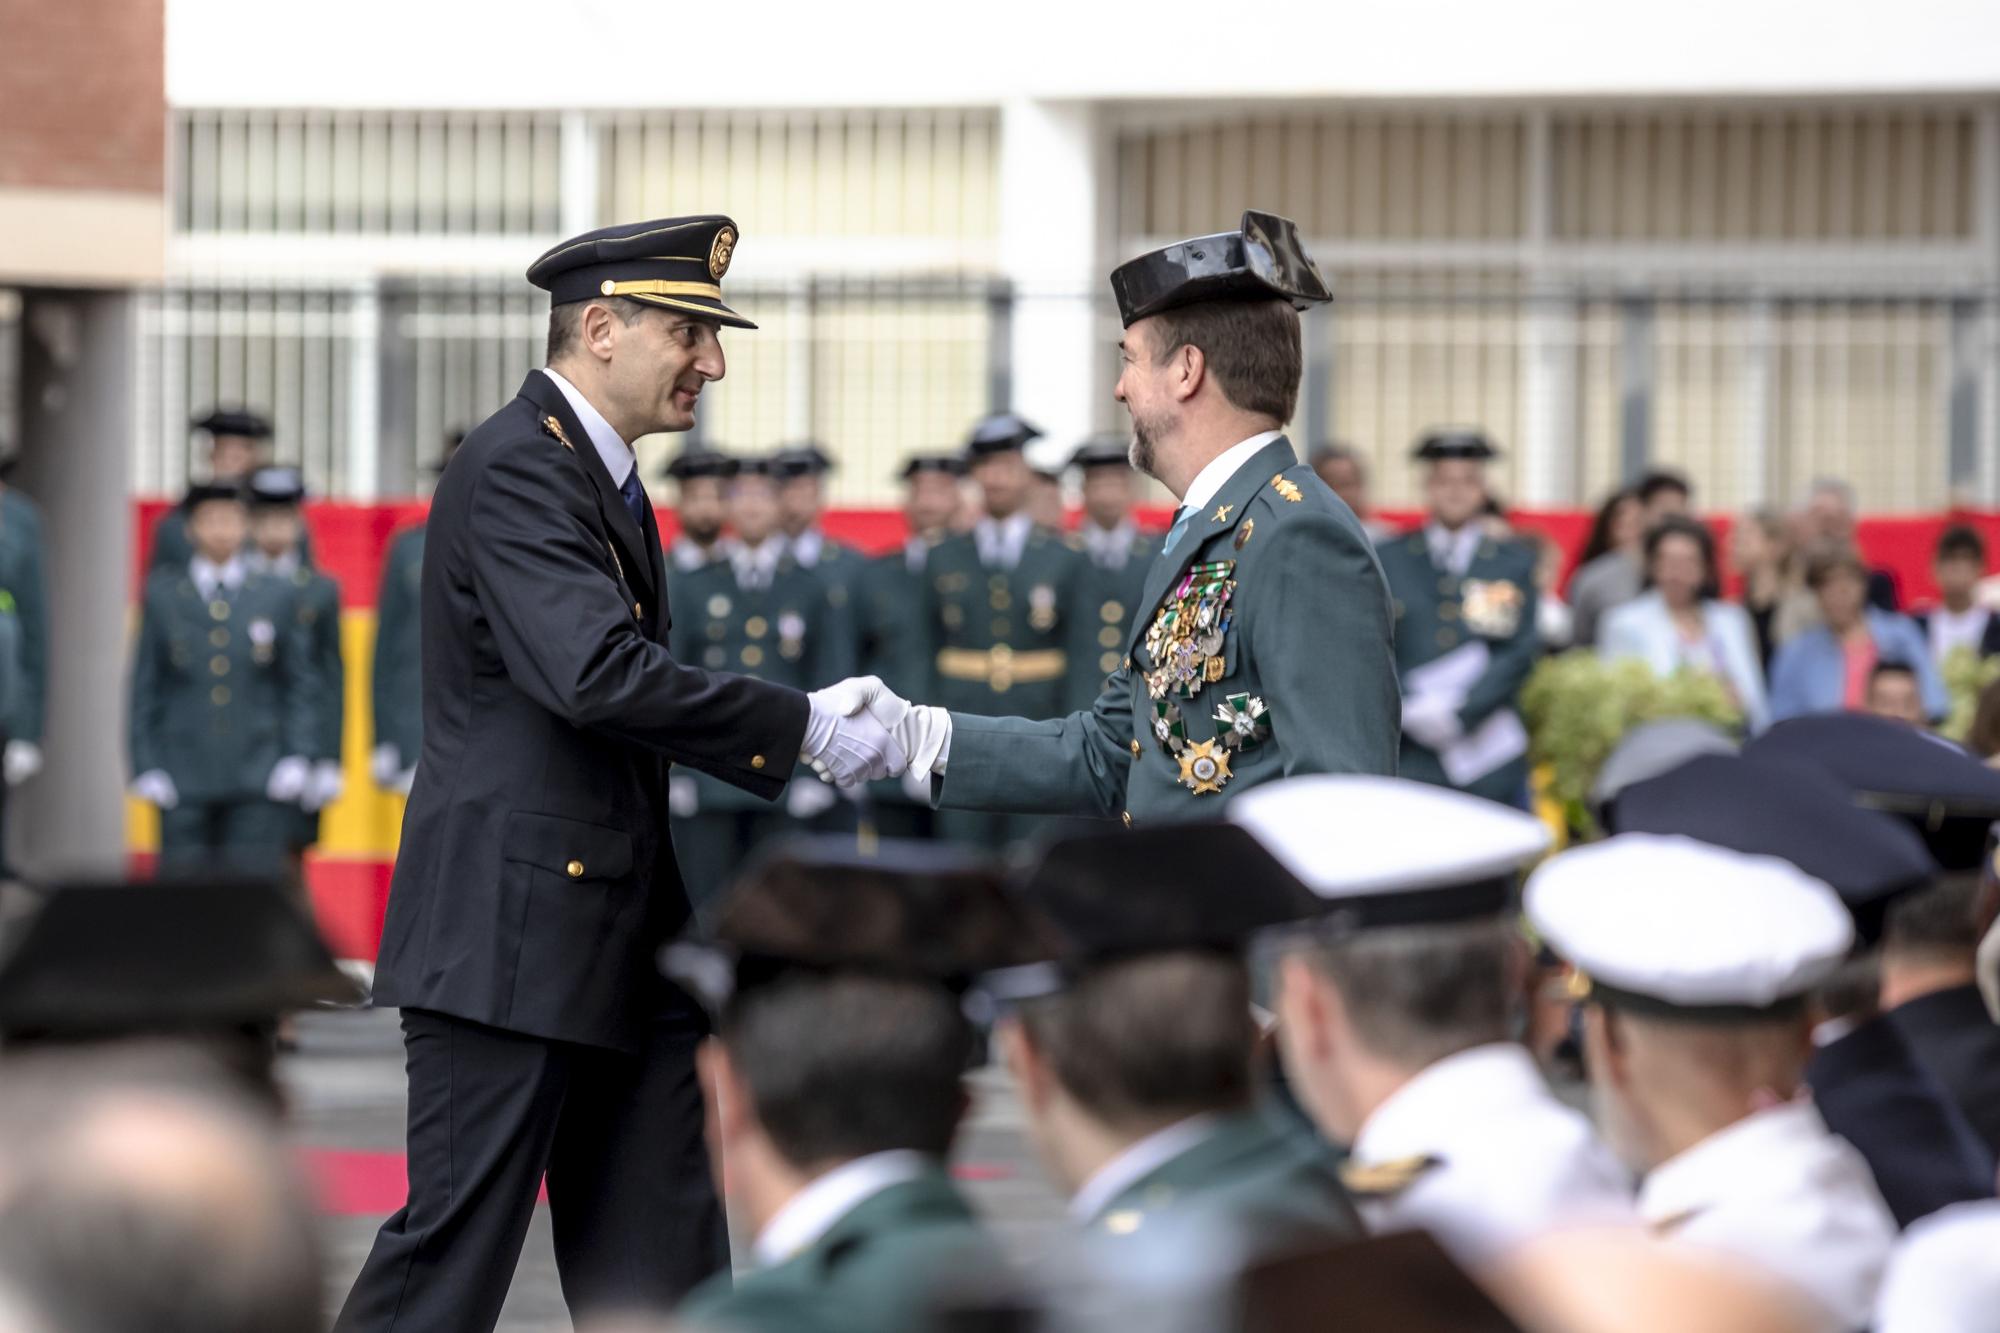 La Guardia Civil celebra en Palma el día de su Patrona